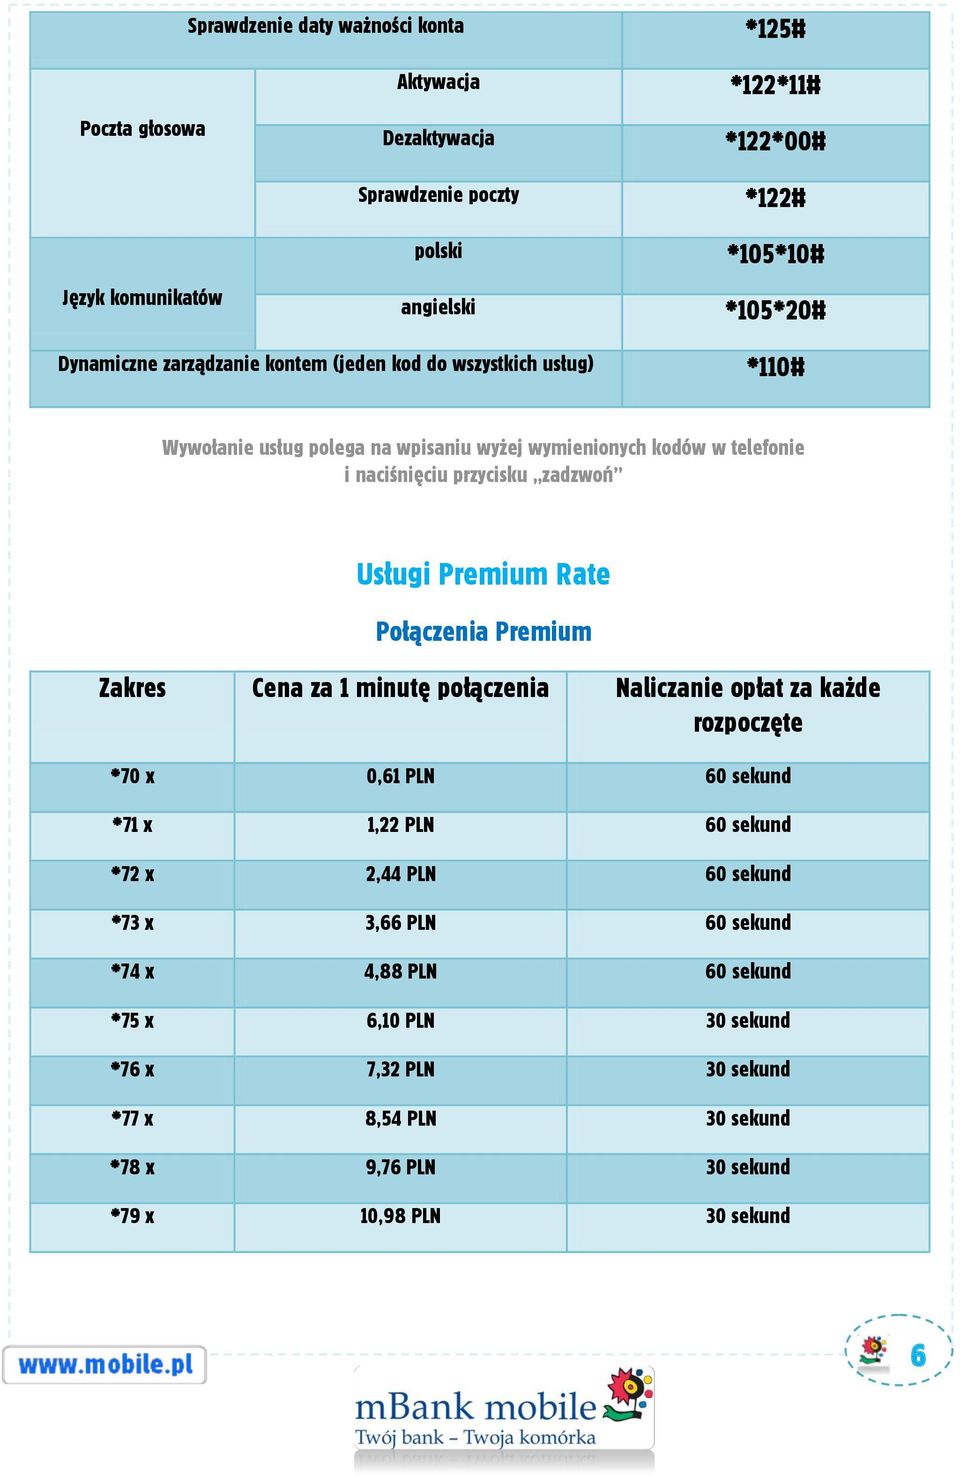 Usługi Premium Rate Połączenia Premium Zakres Cena za 1 minutę połączenia Naliczanie opłat za każde rozpoczęte *70 x 0,61 PLN 60 sekund *71 x 1,22 PLN 60 sekund *72 x 2,44 PLN